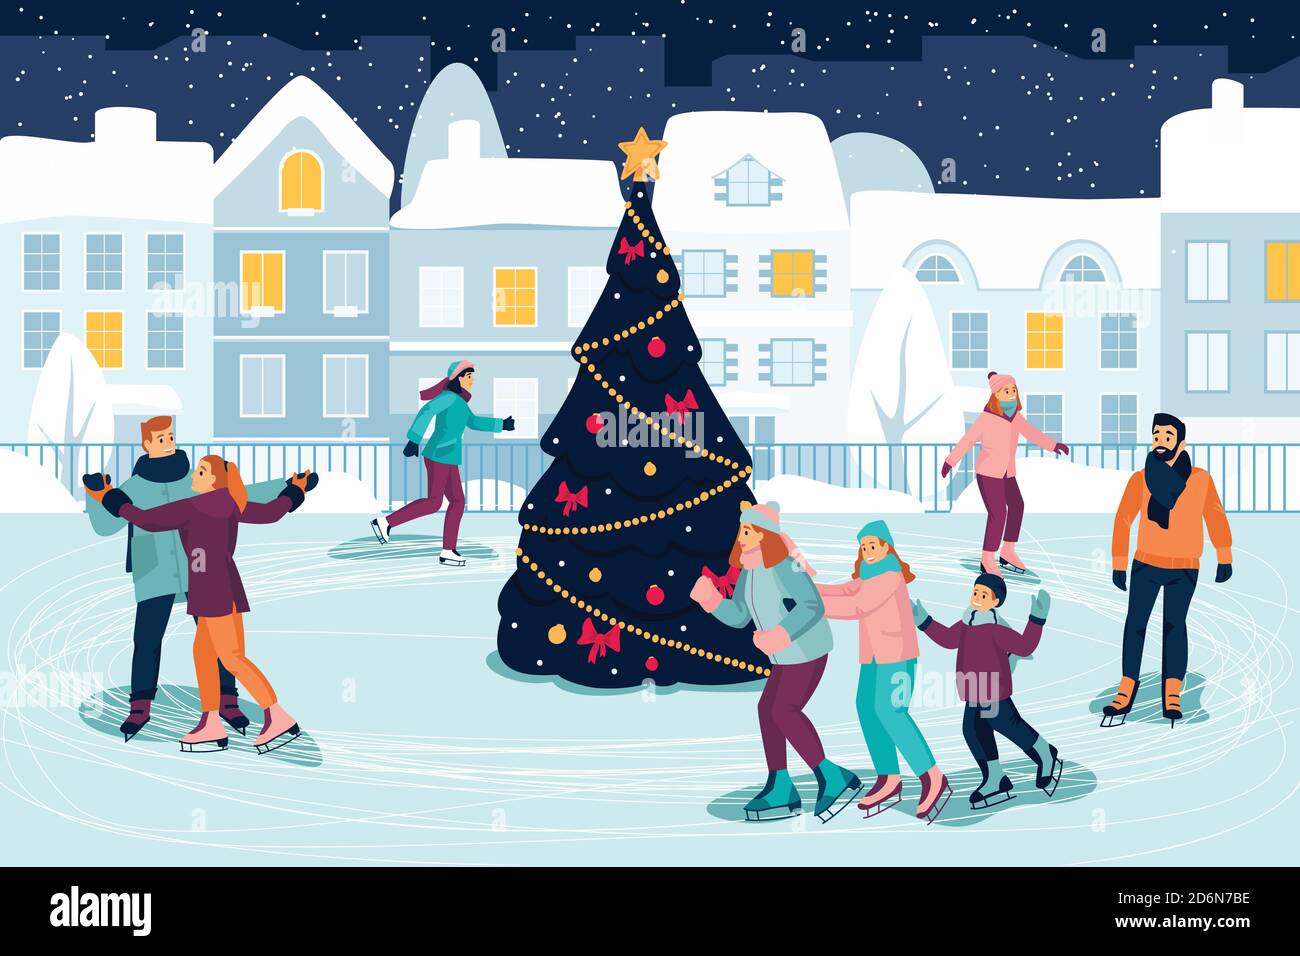 Felici i giovani che pattinano sulla pista di ghiaccio intorno all'albero di Natale decorato. Illustrazione di un cartone piatto vettoriale. Vacanze di nuovi anni ed eventi familiari all'aperto Illustrazione Vettoriale